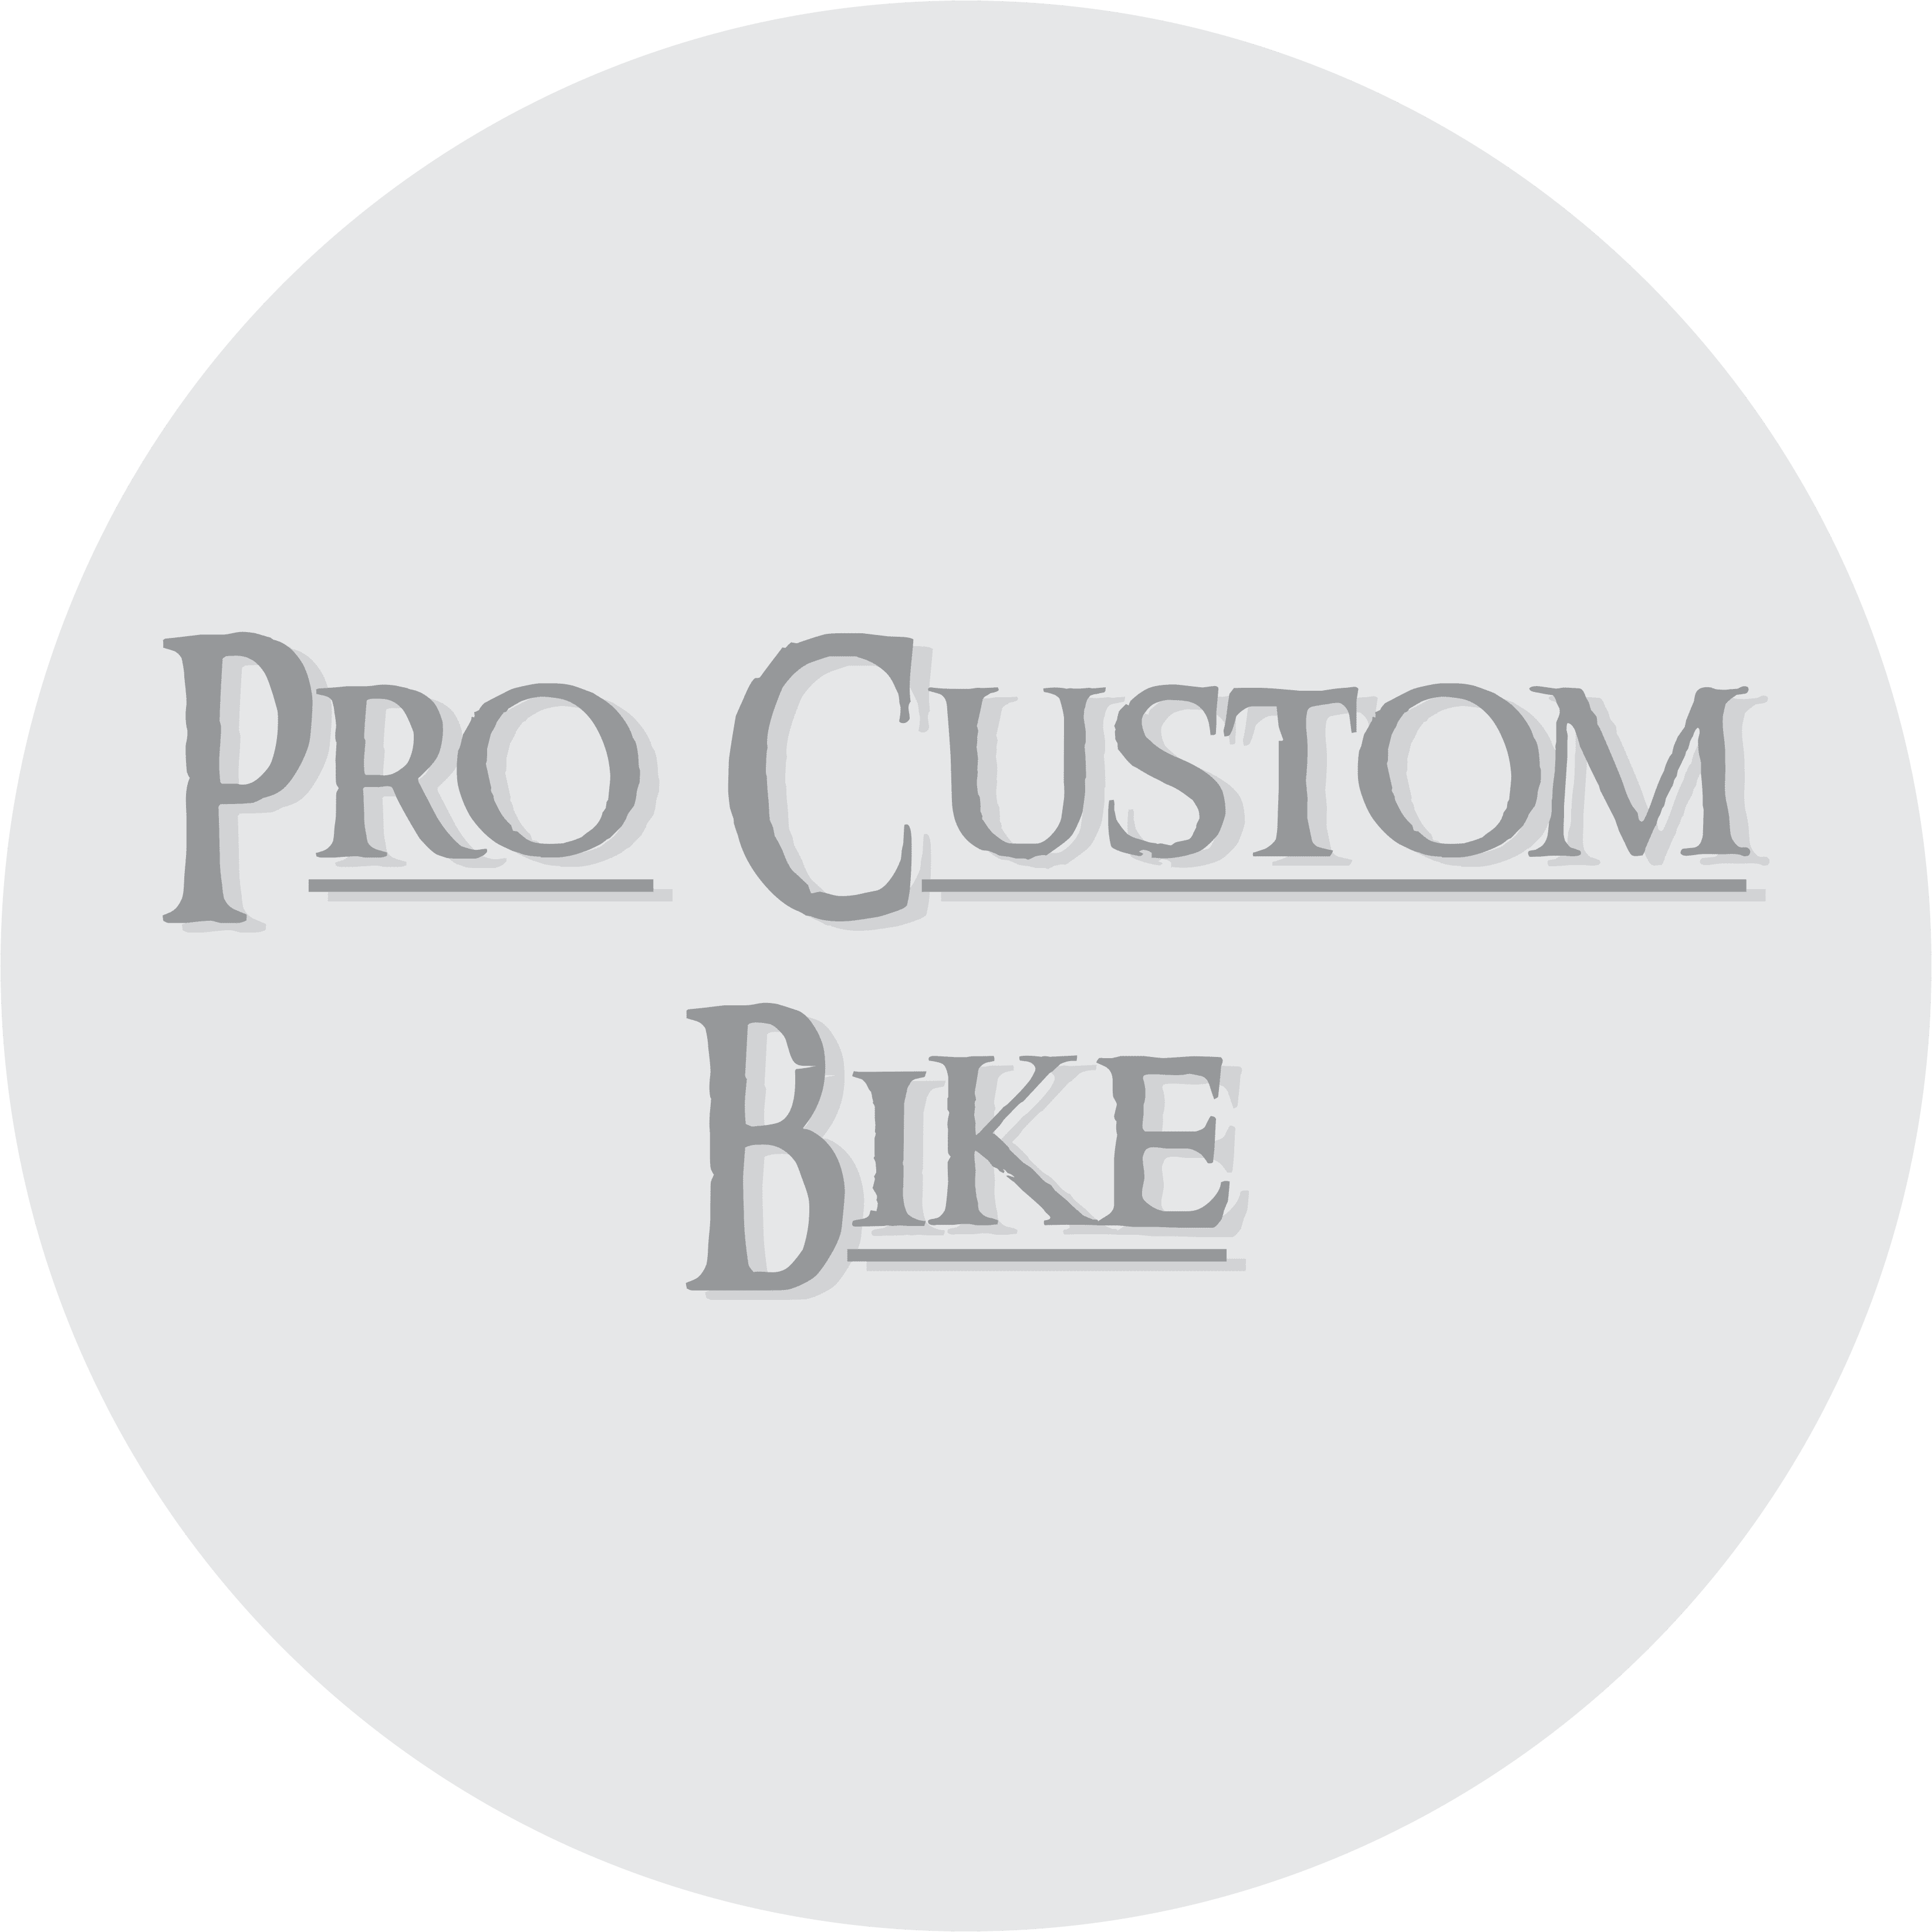 Pro Custom Bike